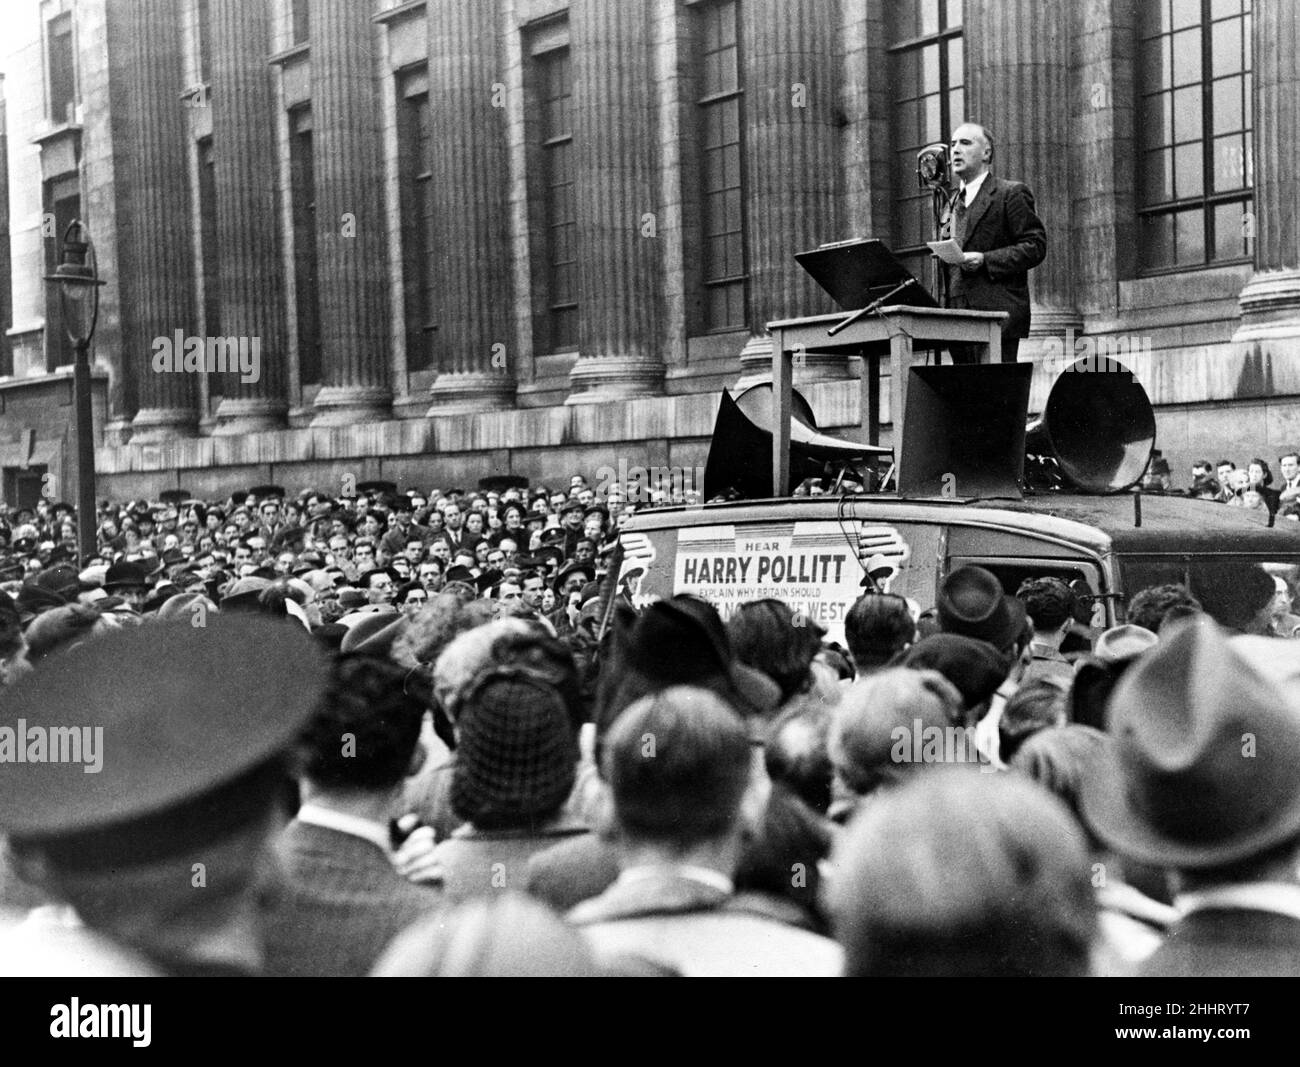 Harry Pollitt, Generalsekretär der britischen Kommunistischen Partei, sprach vor großen Menschenmengen, die sich unter dem Podium versammelten.September 1941. Stockfoto